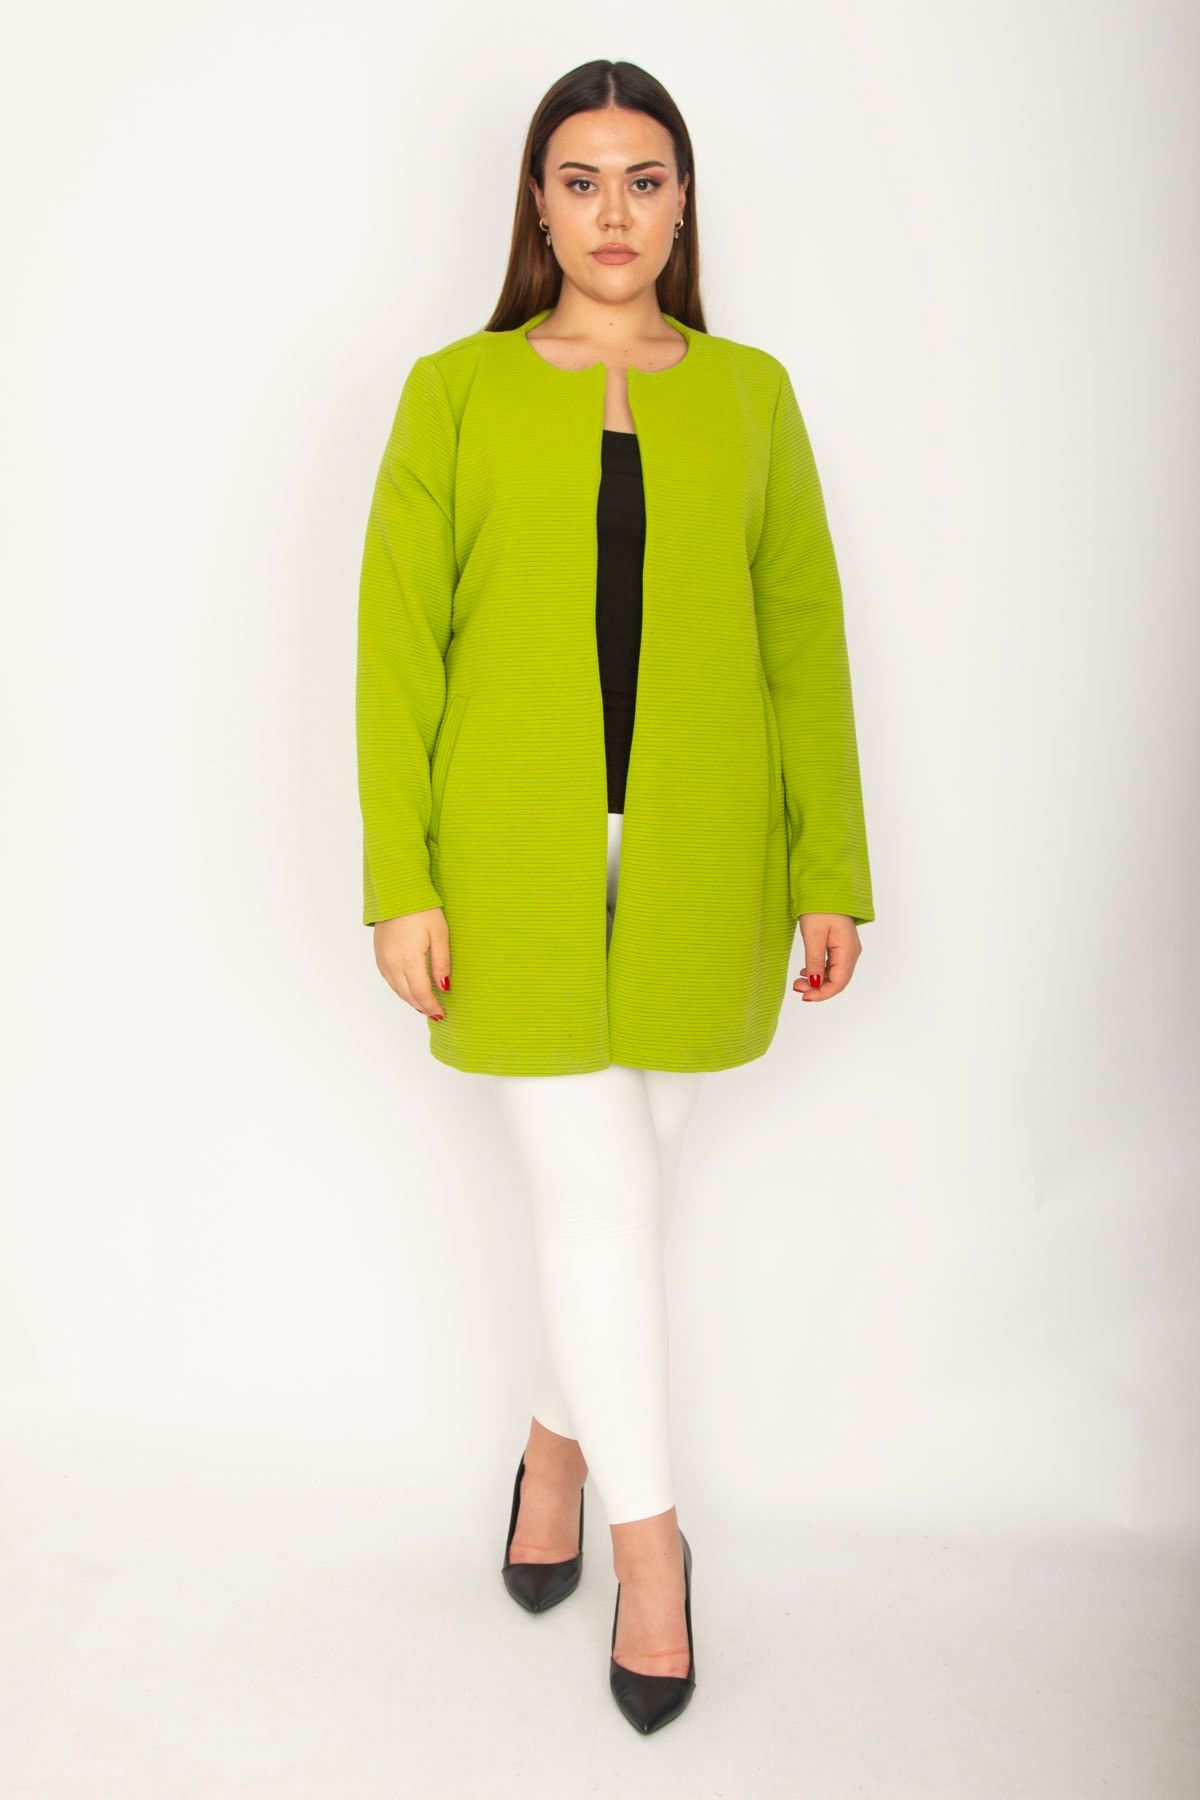 Şans Tekstil Kadın Yeşil Kendinden Çizgili Yan Cepli Astarsız Ceket 26a27260